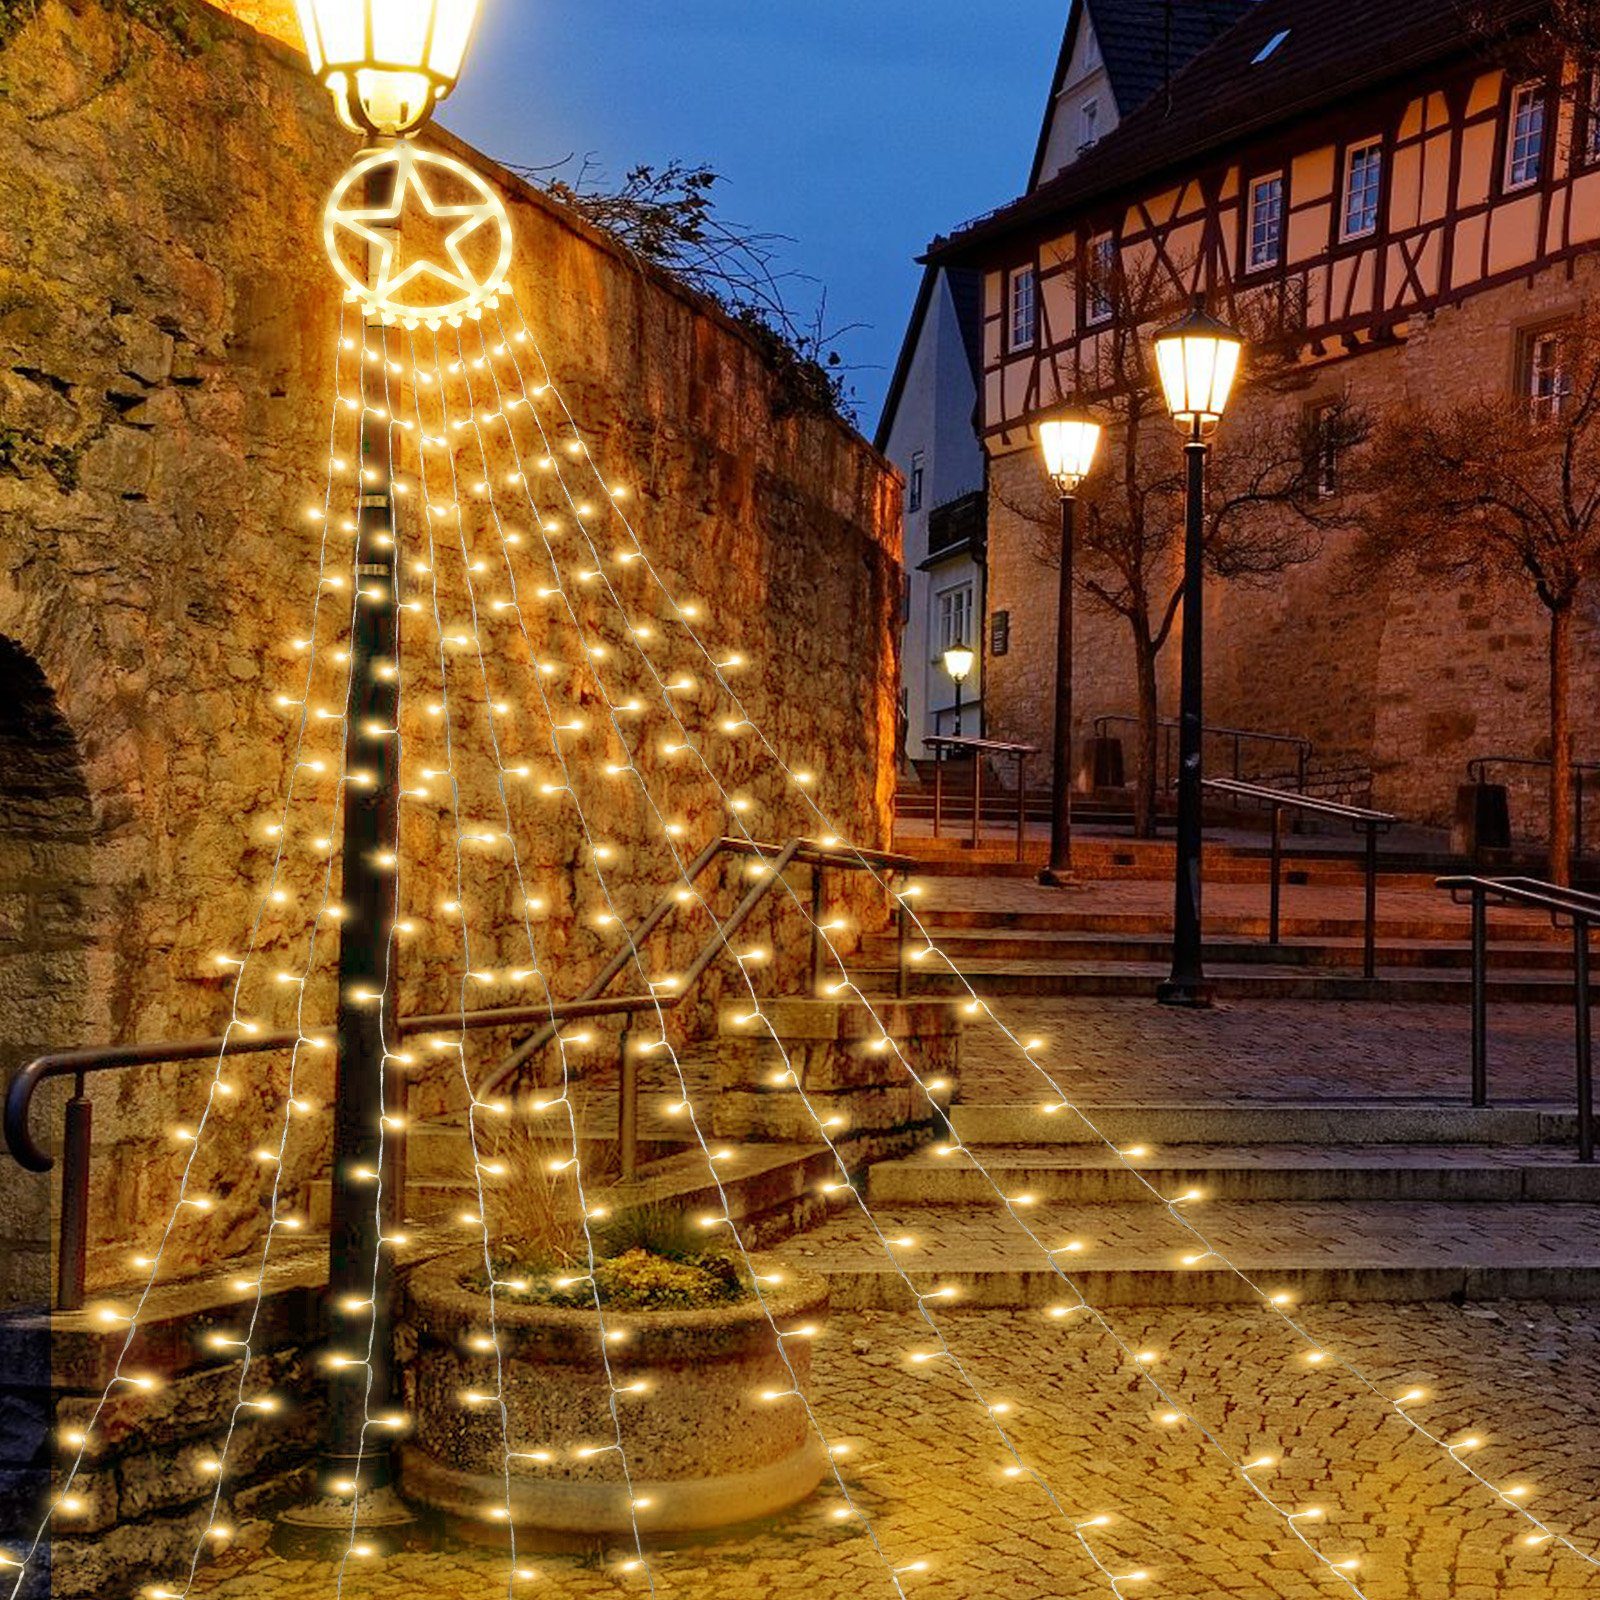 LED-Lichterkette Lichterkette 8 Konzerte Außen Weihnachtsbaum Modi Gimisgu Warmweiß Aussen LED